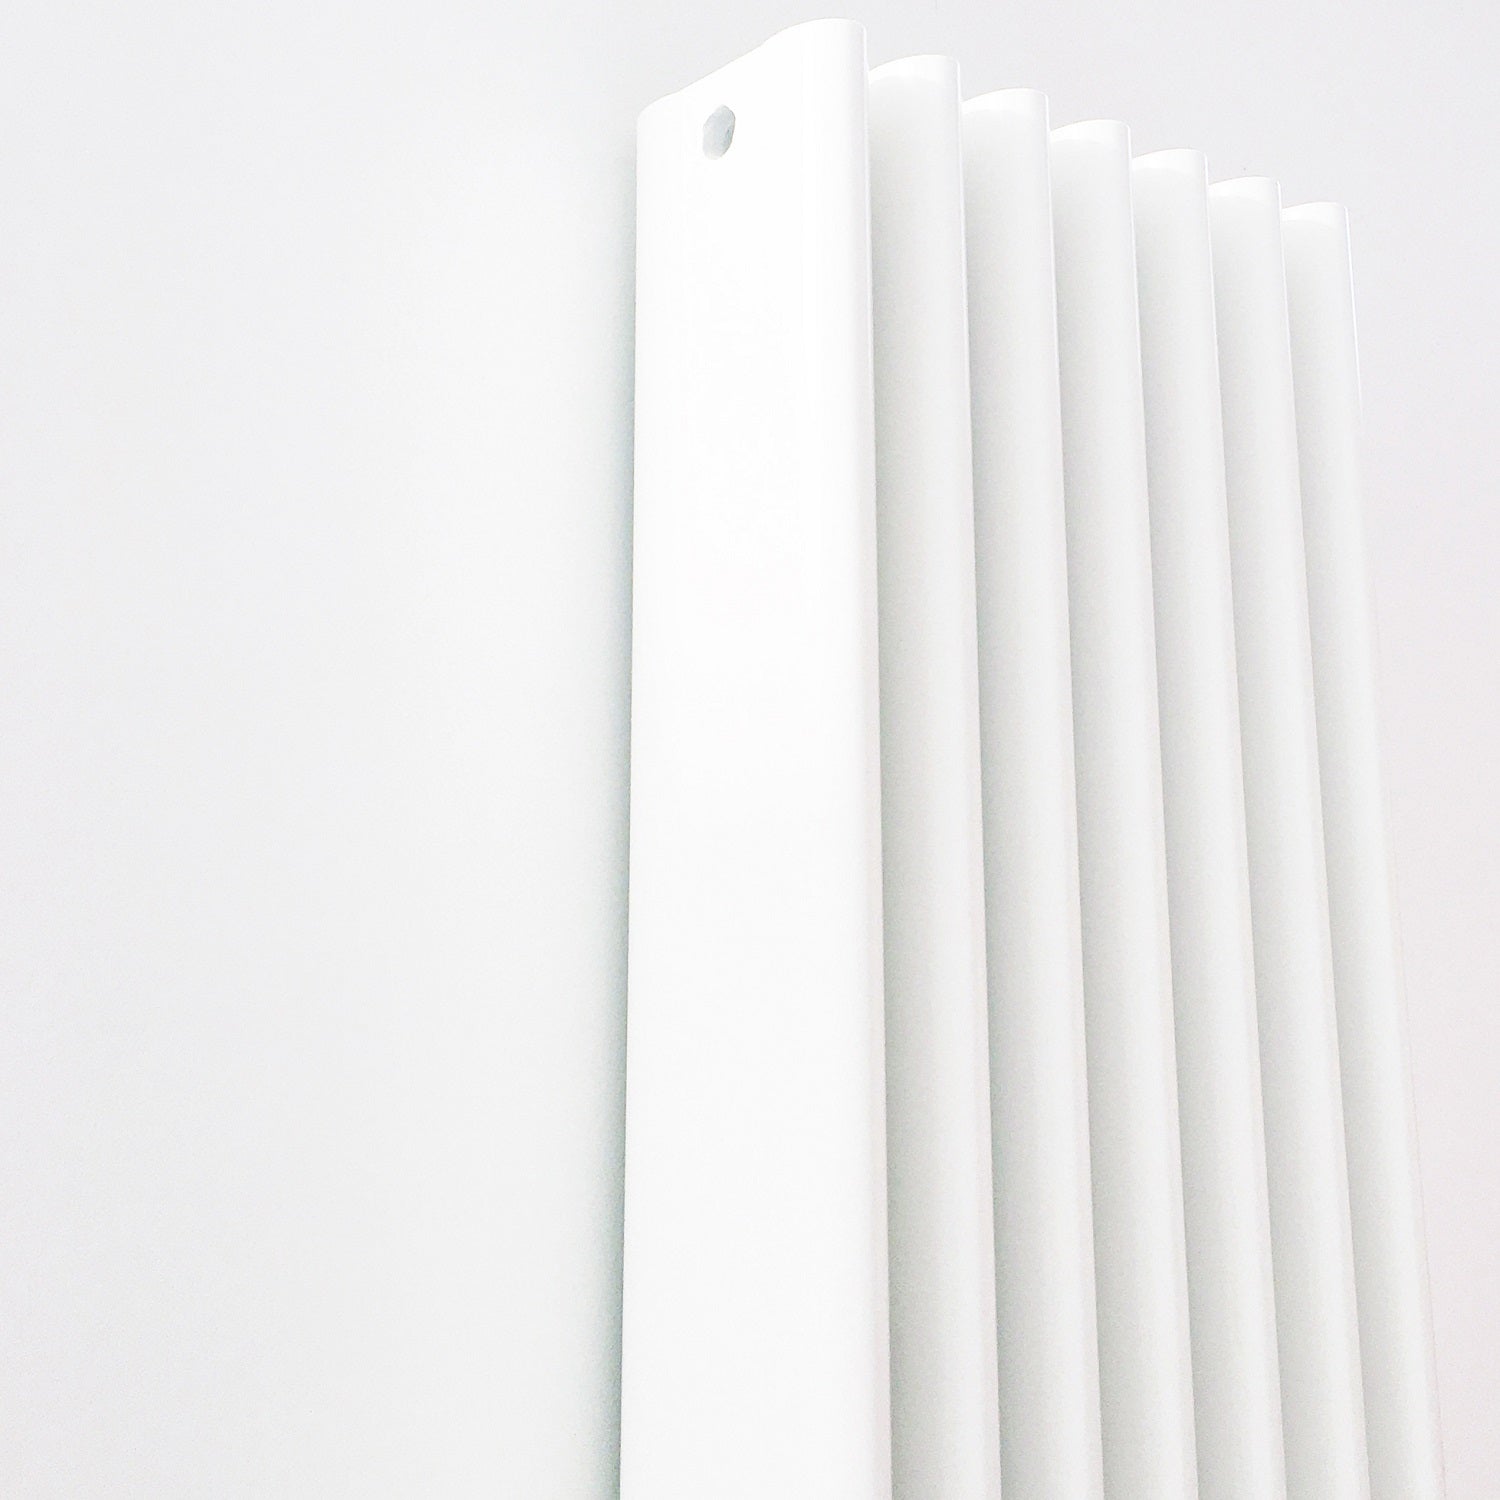 Eskimo column radiator in White